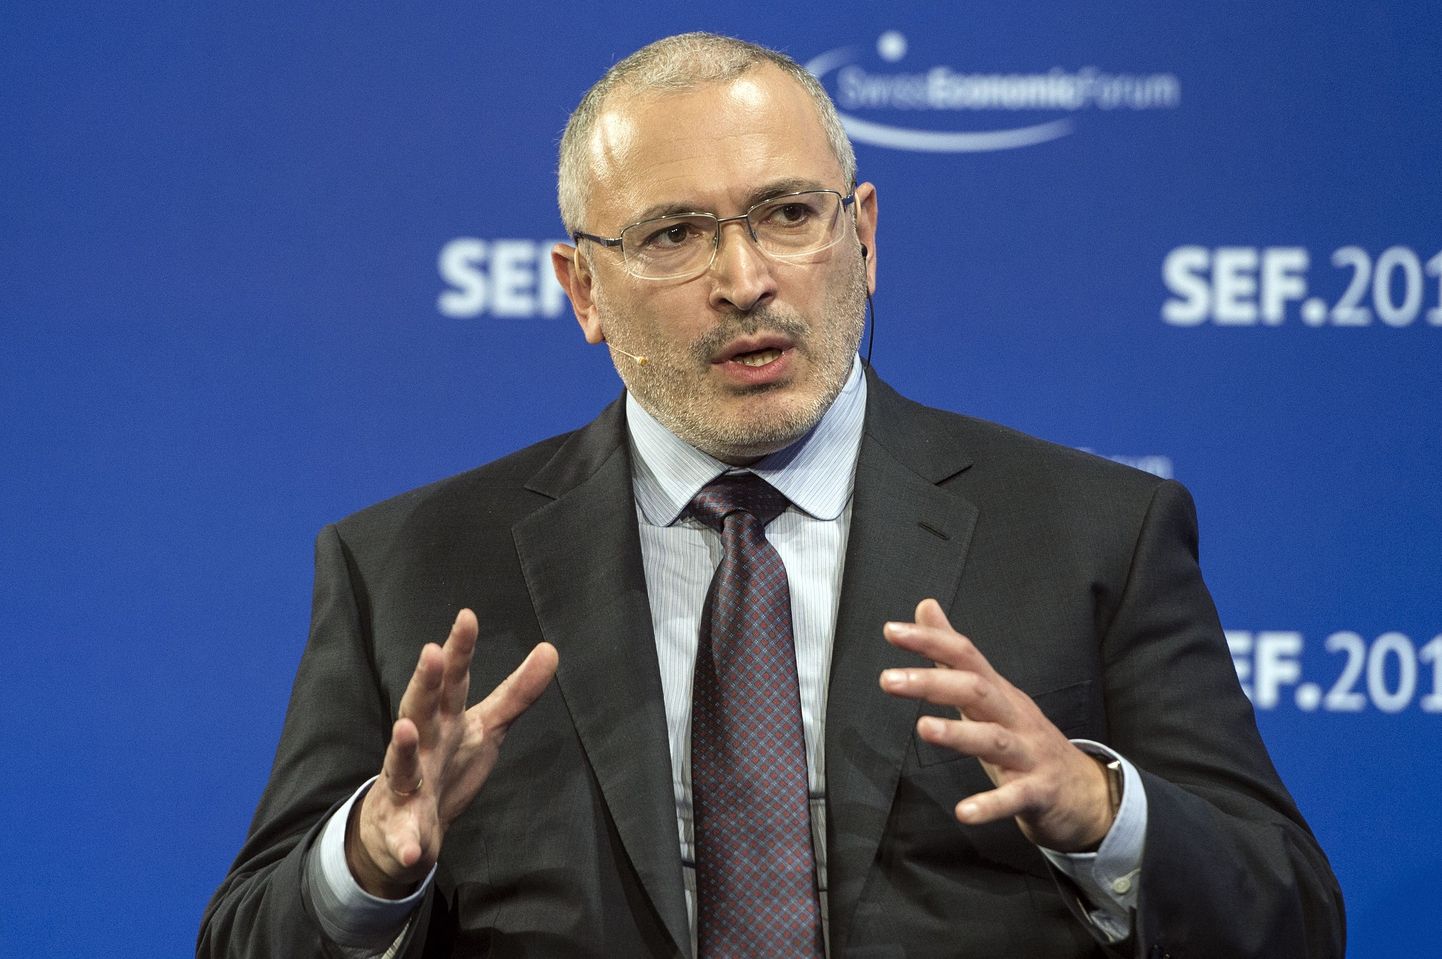 Mihhail Hodorkovski